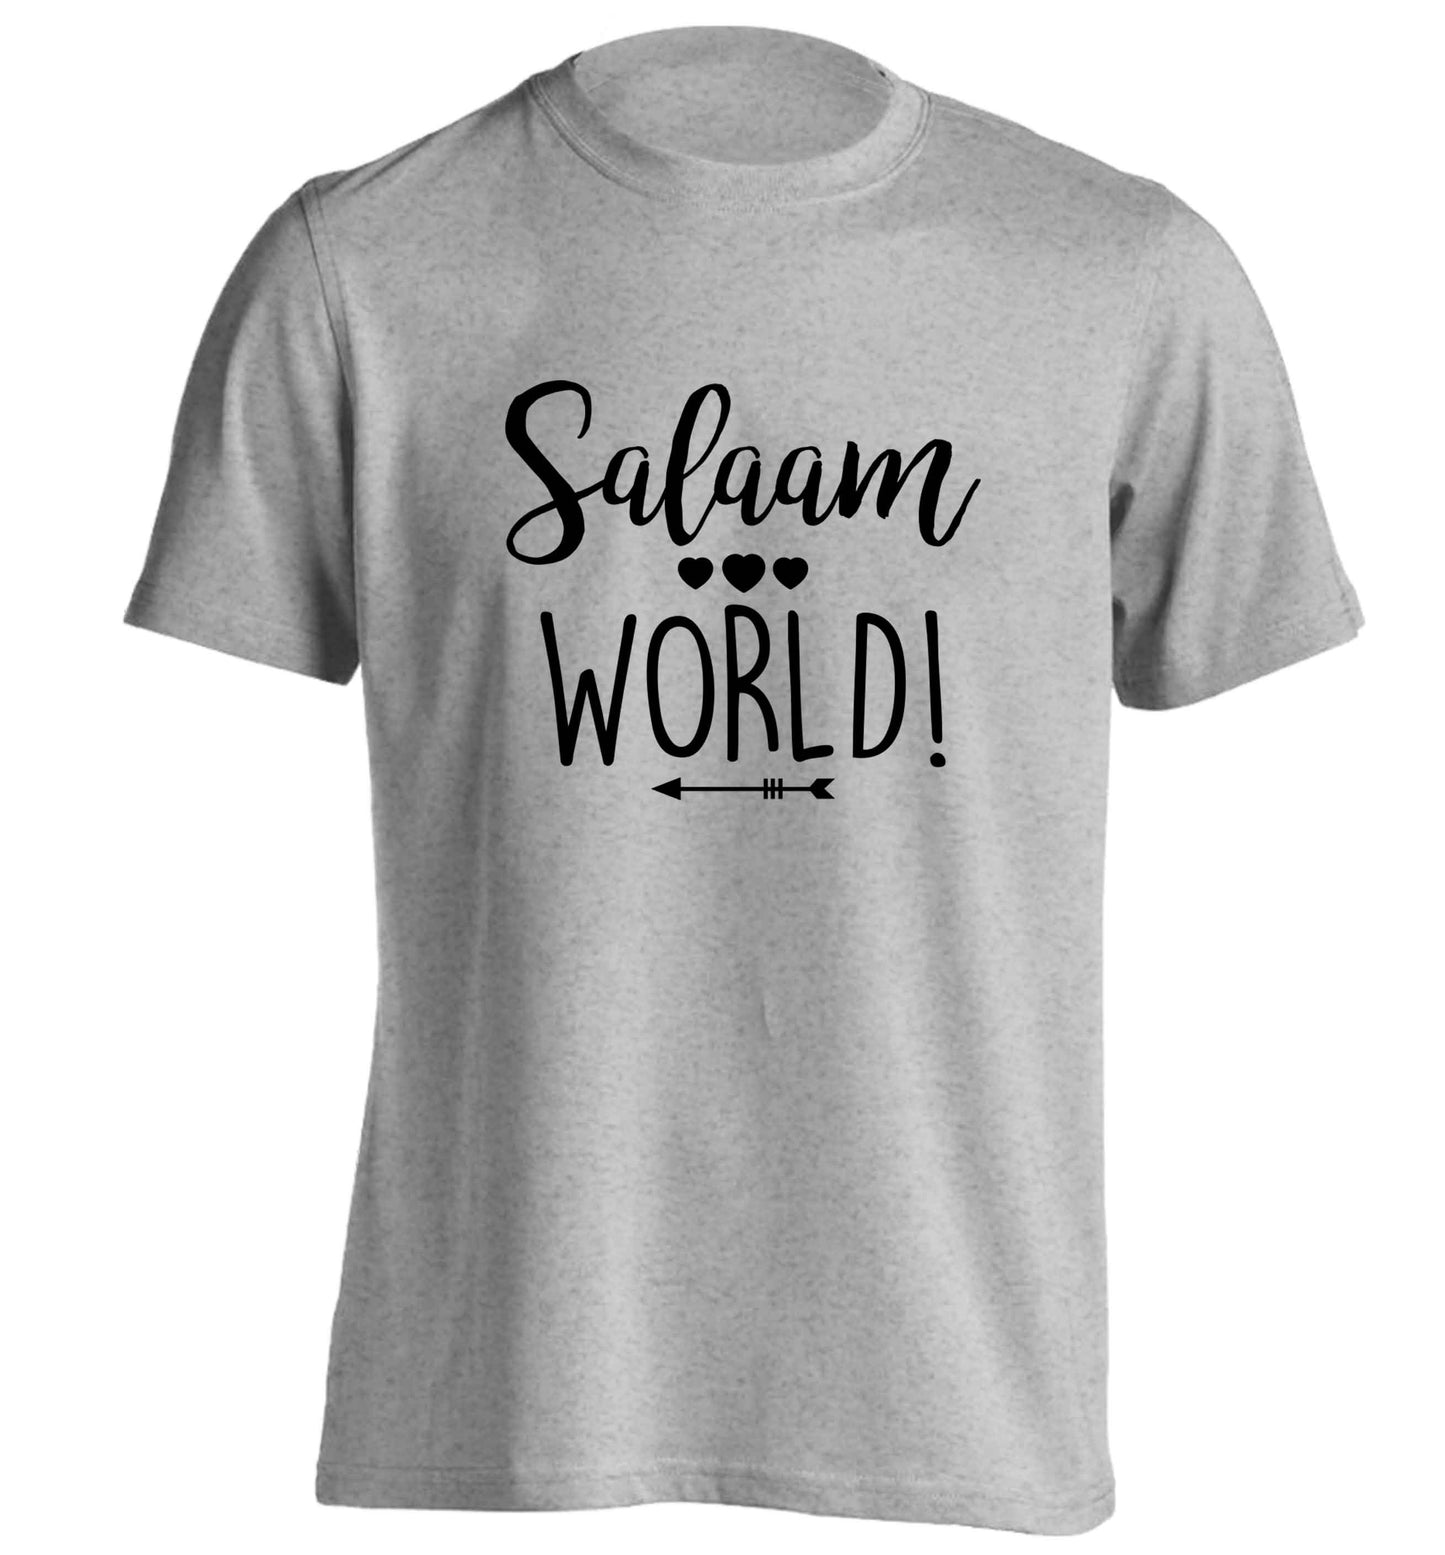 Salaam world adults unisex grey Tshirt 2XL